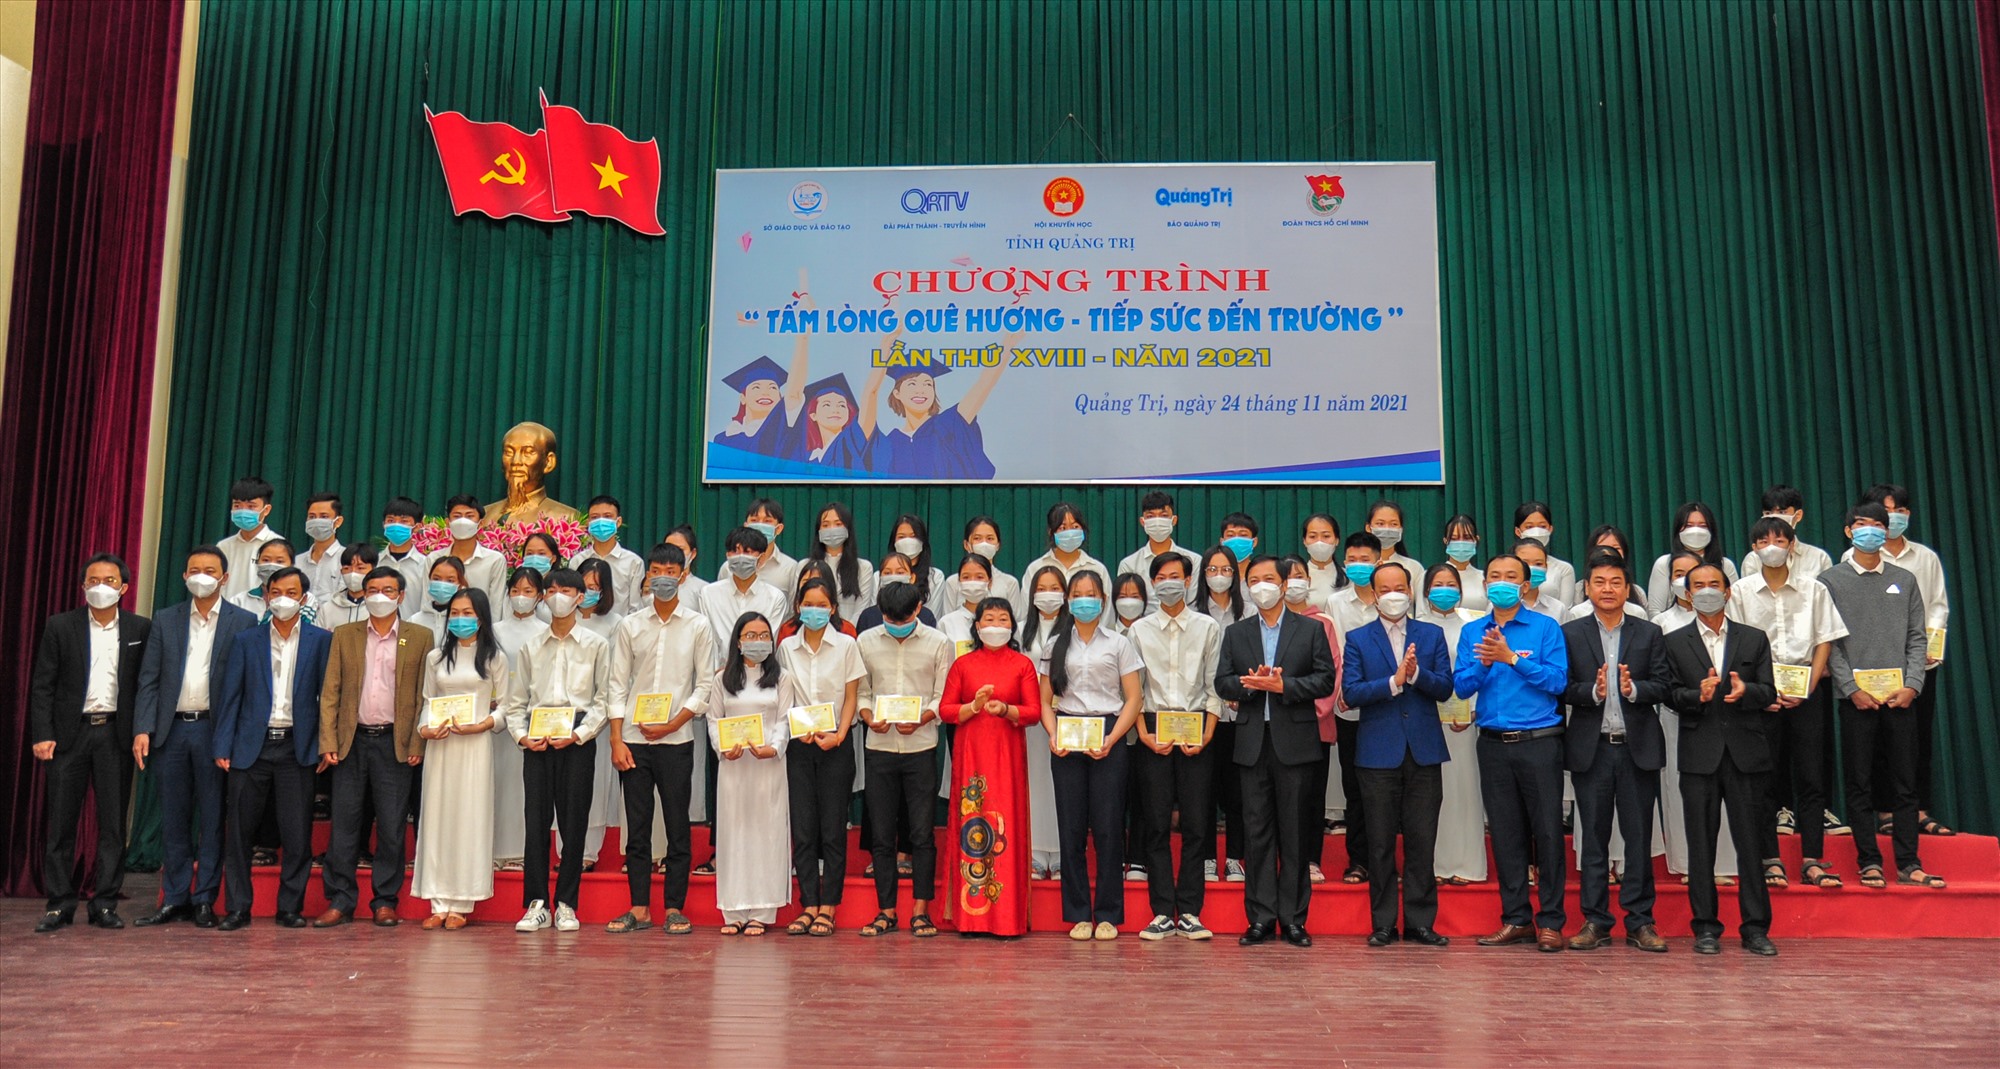 Phó Chủ tịch UBND tỉnh Hoàng Nam và ban tổ chức chụp ảnh lưu niệm cùng các sinh viên - Ảnh: Trần Tuyền